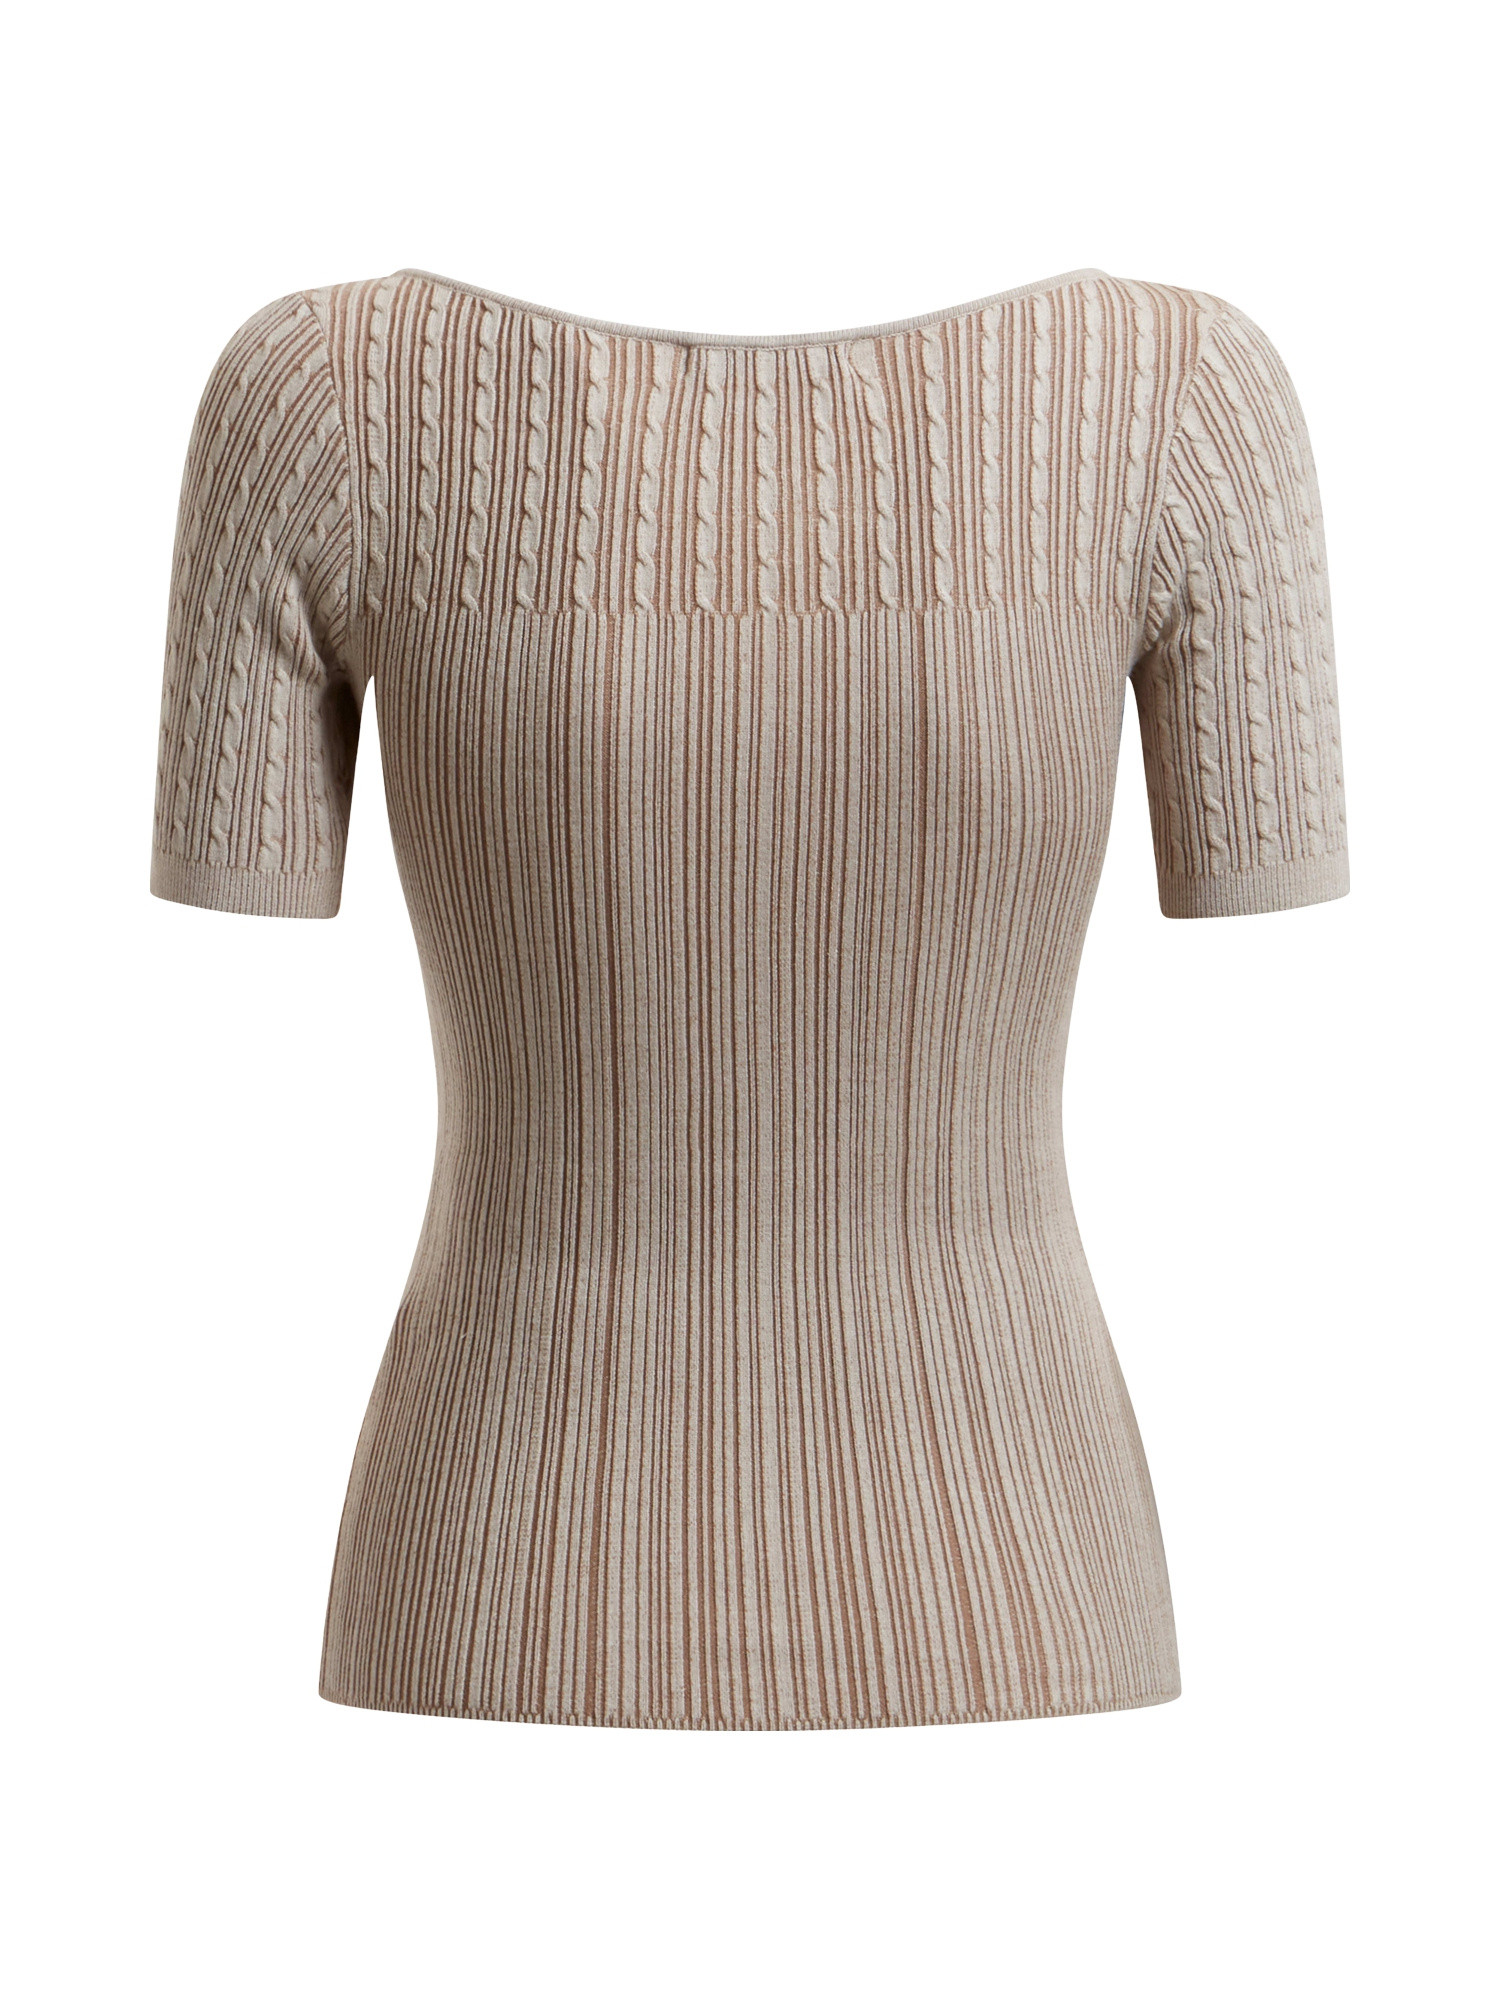 Viscose blend knit top, Beige, large image number 1